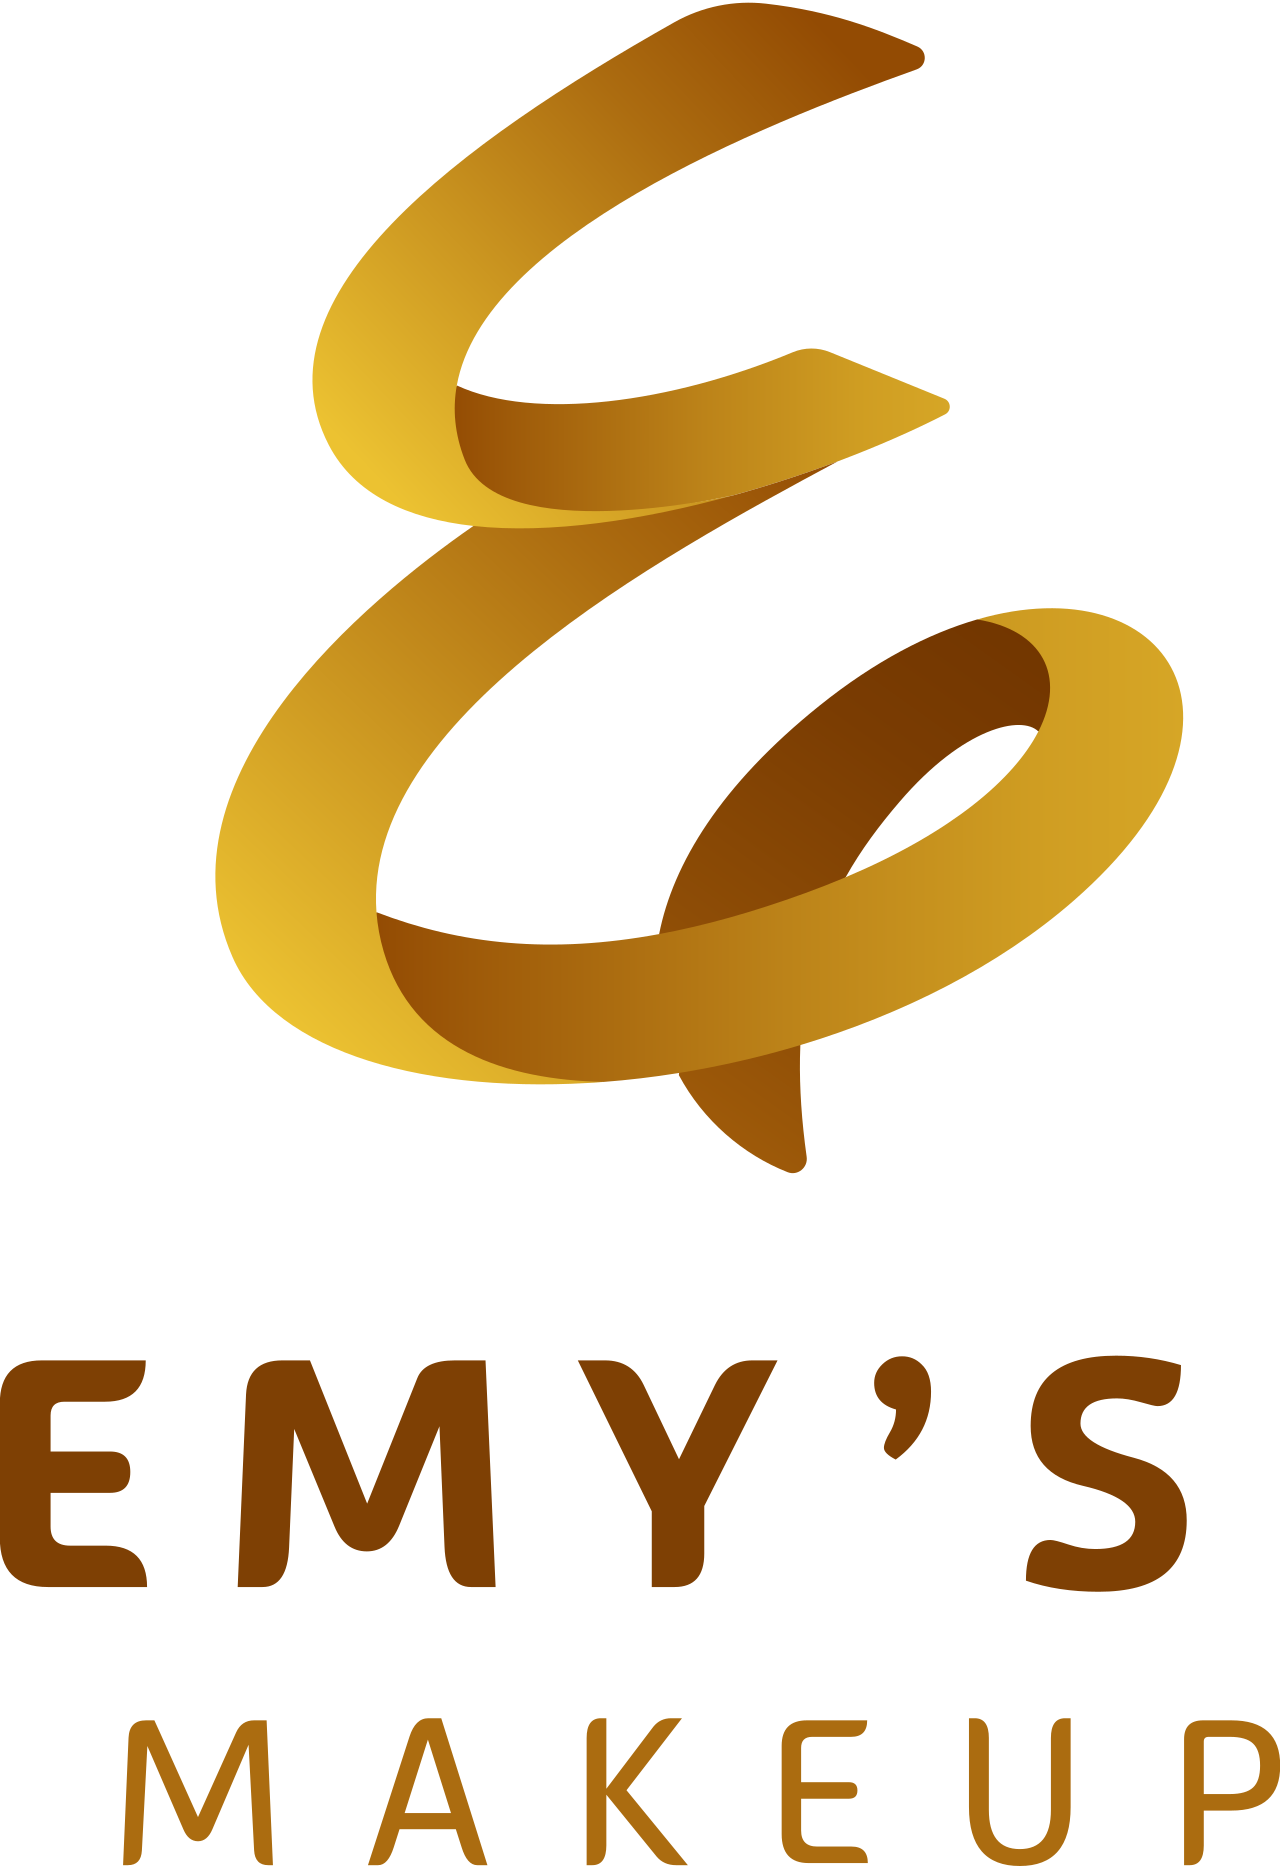 Emy’s's logo